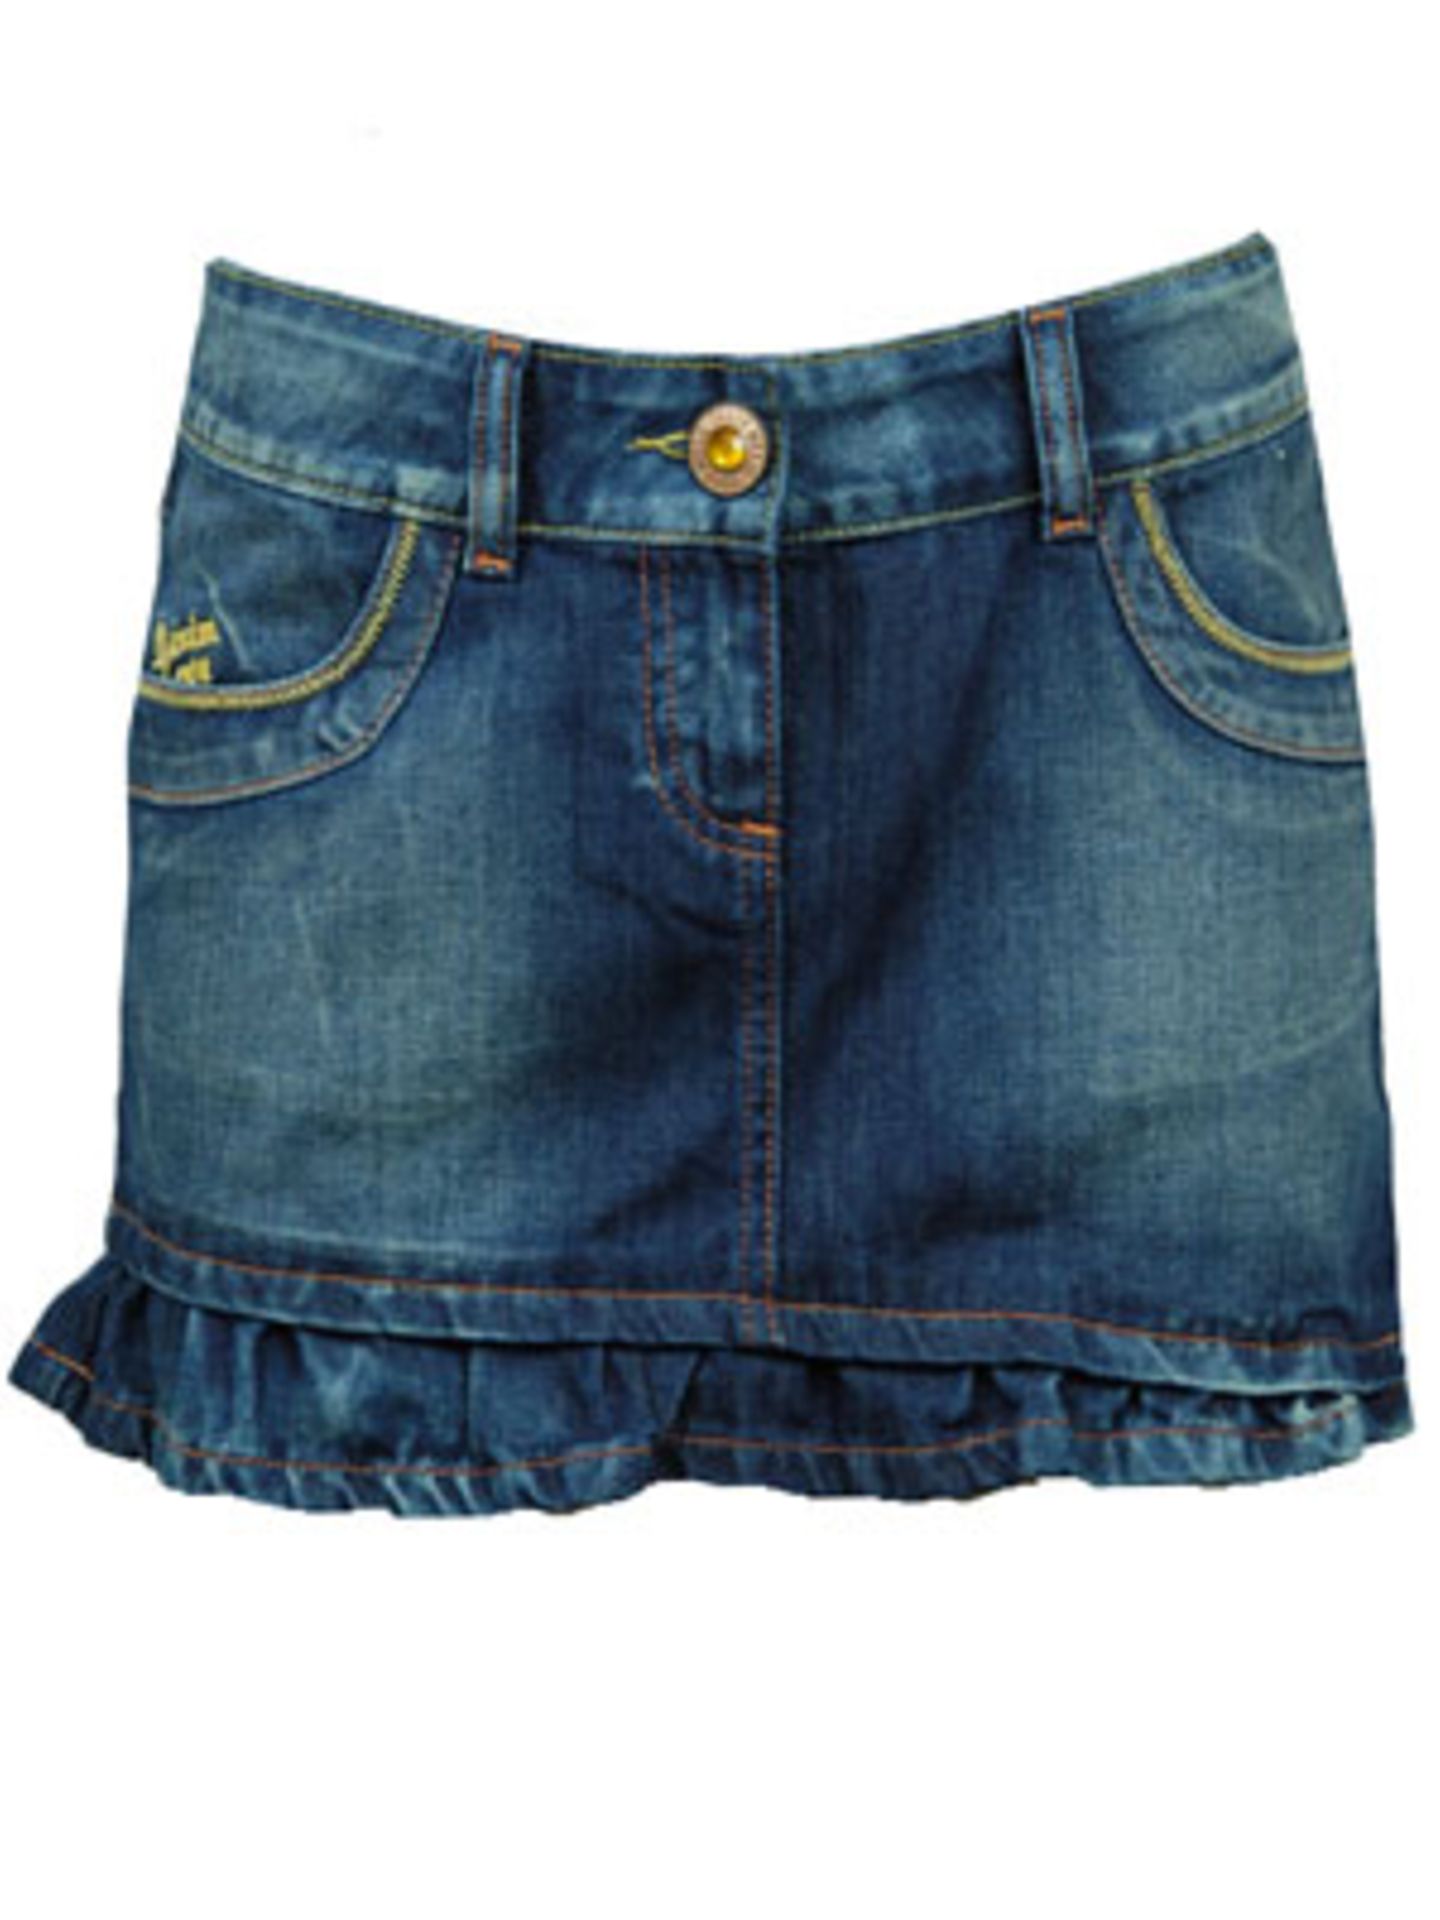 Jeans-Mini; 25 Euro von Tally Weijl